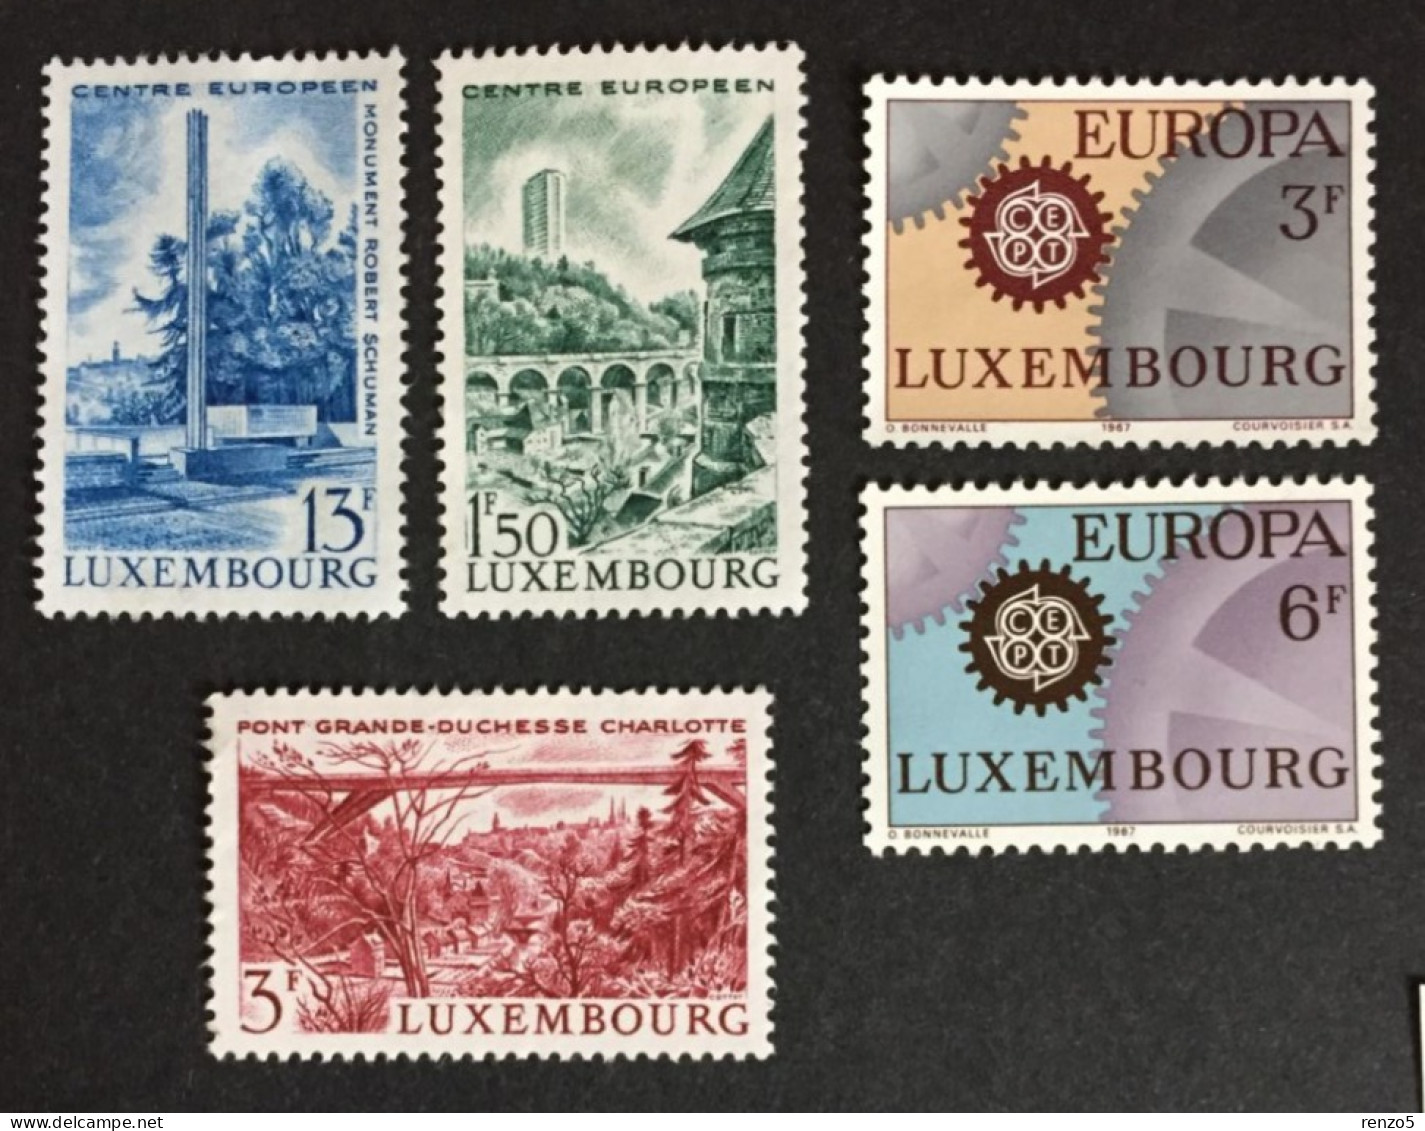 1966 Luxembourg - Tourism Landmarks, Europa CEPT, Lux European Center - Unused ( No Gum ) - Ungebraucht